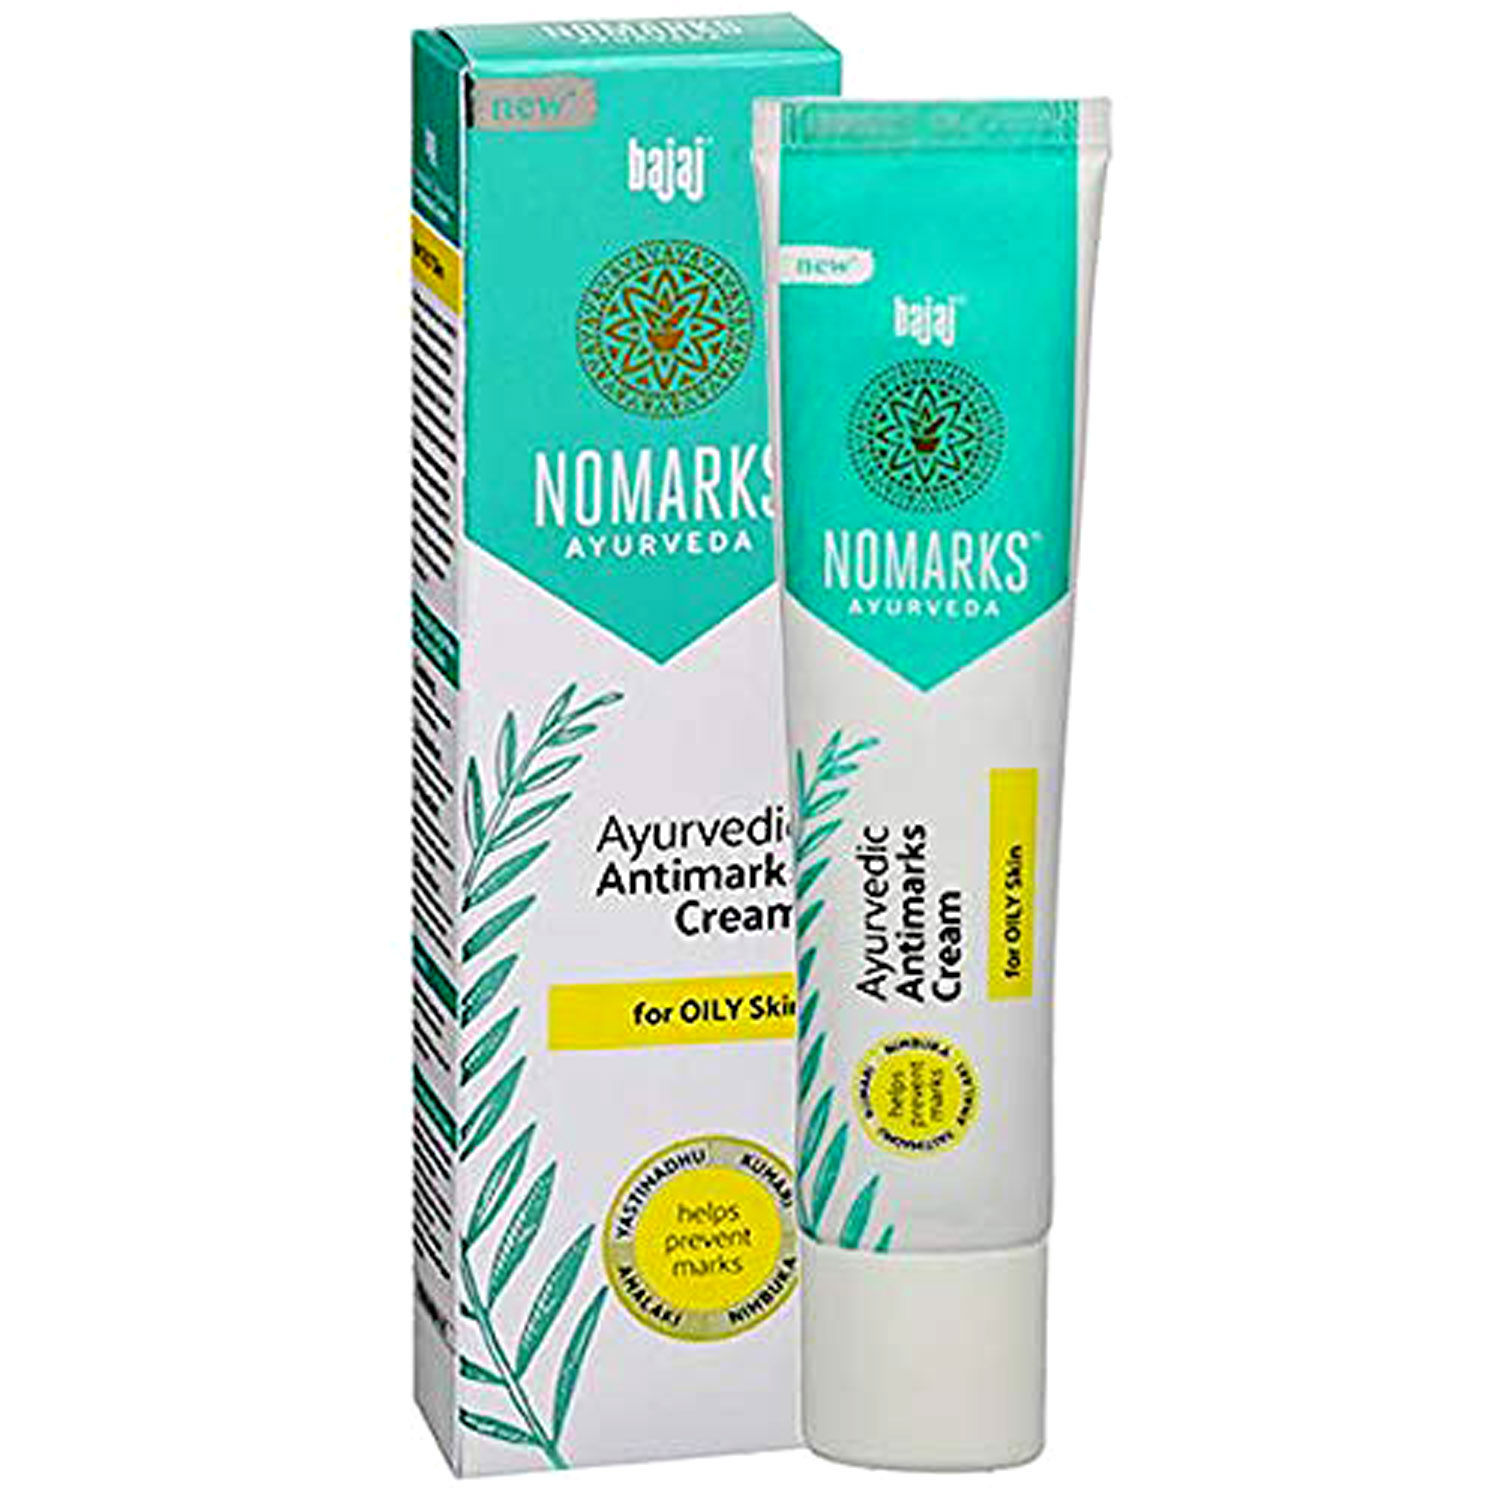 Nomarks Ayurvedic Antimarks Cream For Oily Skin, 25 gm, Pack of 1 